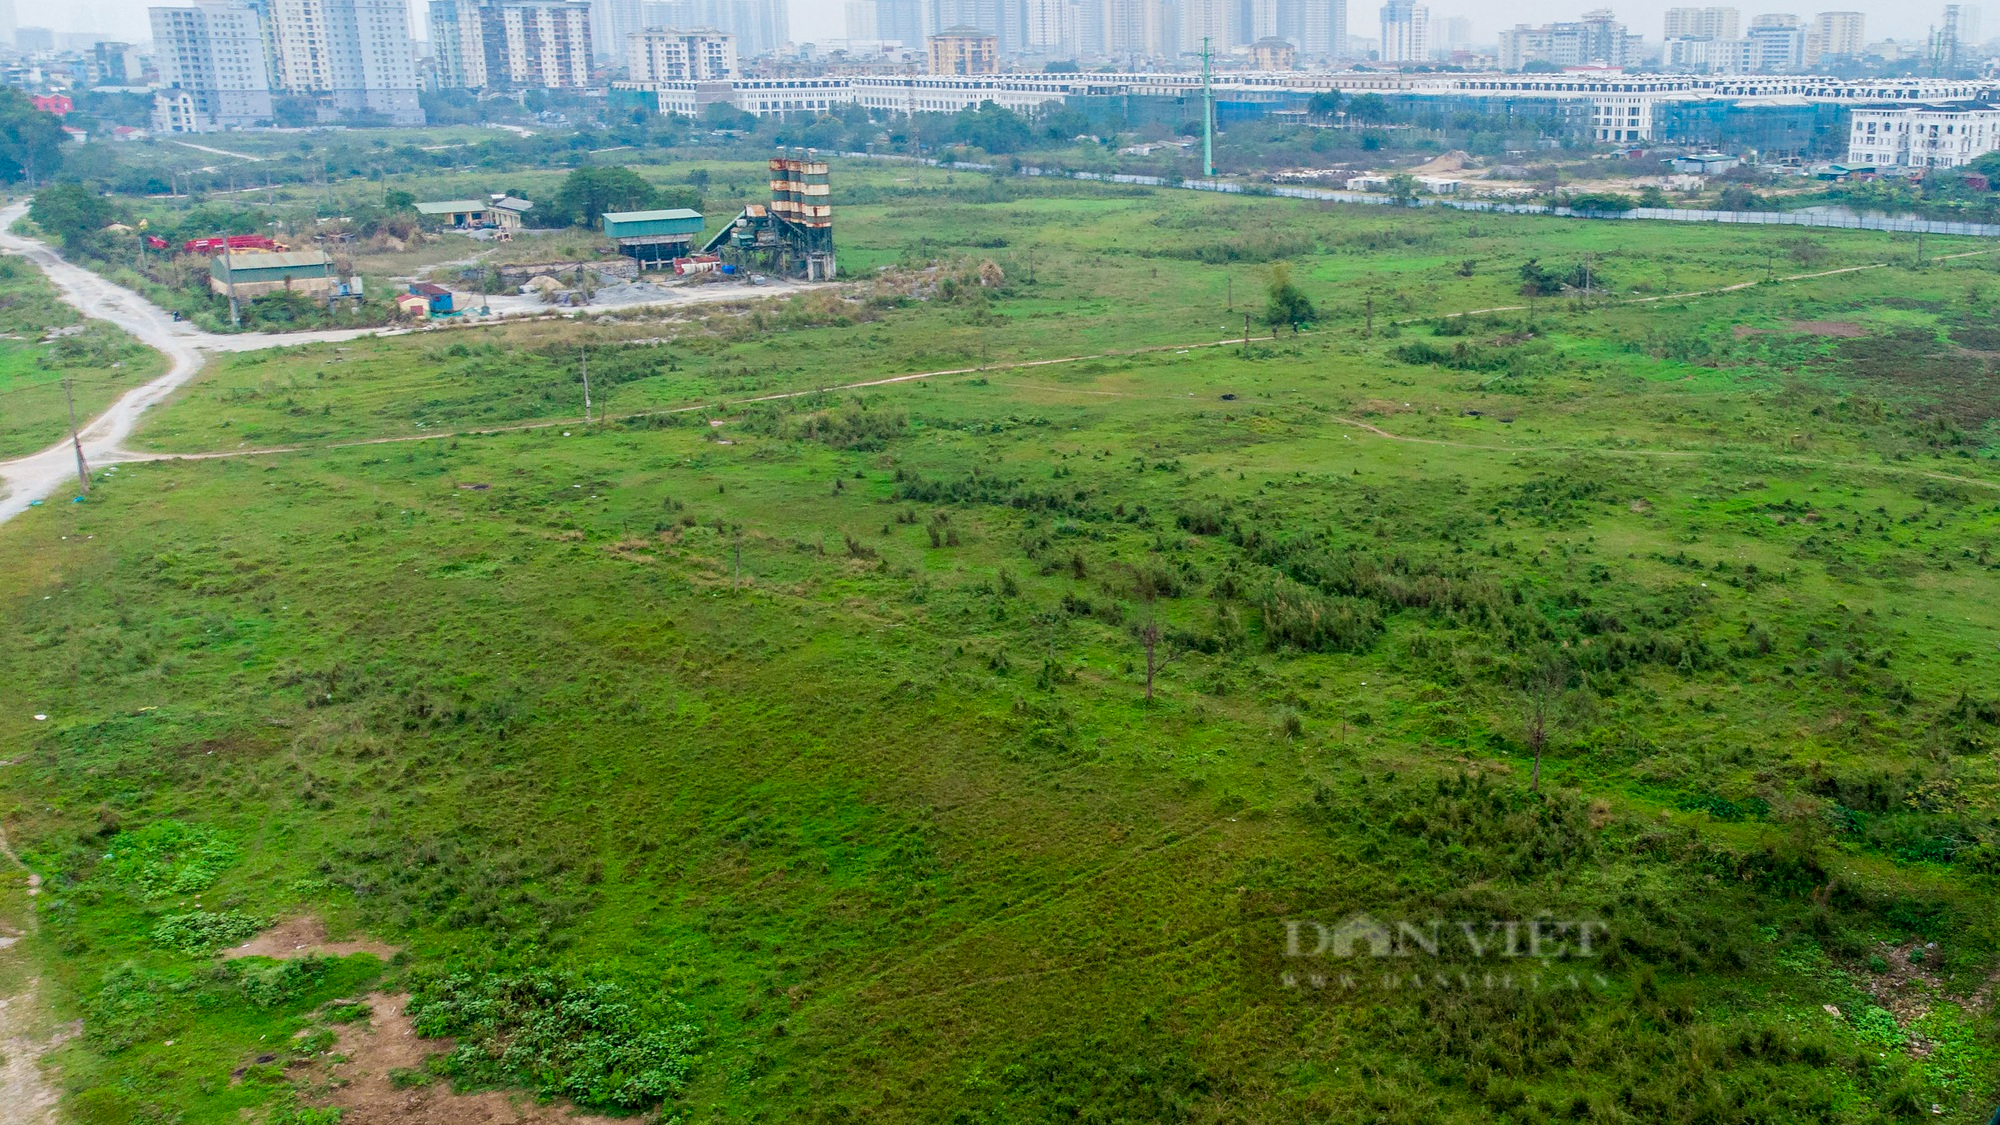 Cận cảnh khu đất vàng ở Hà Nội bị chủ đầu tư bỏ hoang gần 2 thập kỷ - Ảnh 8.